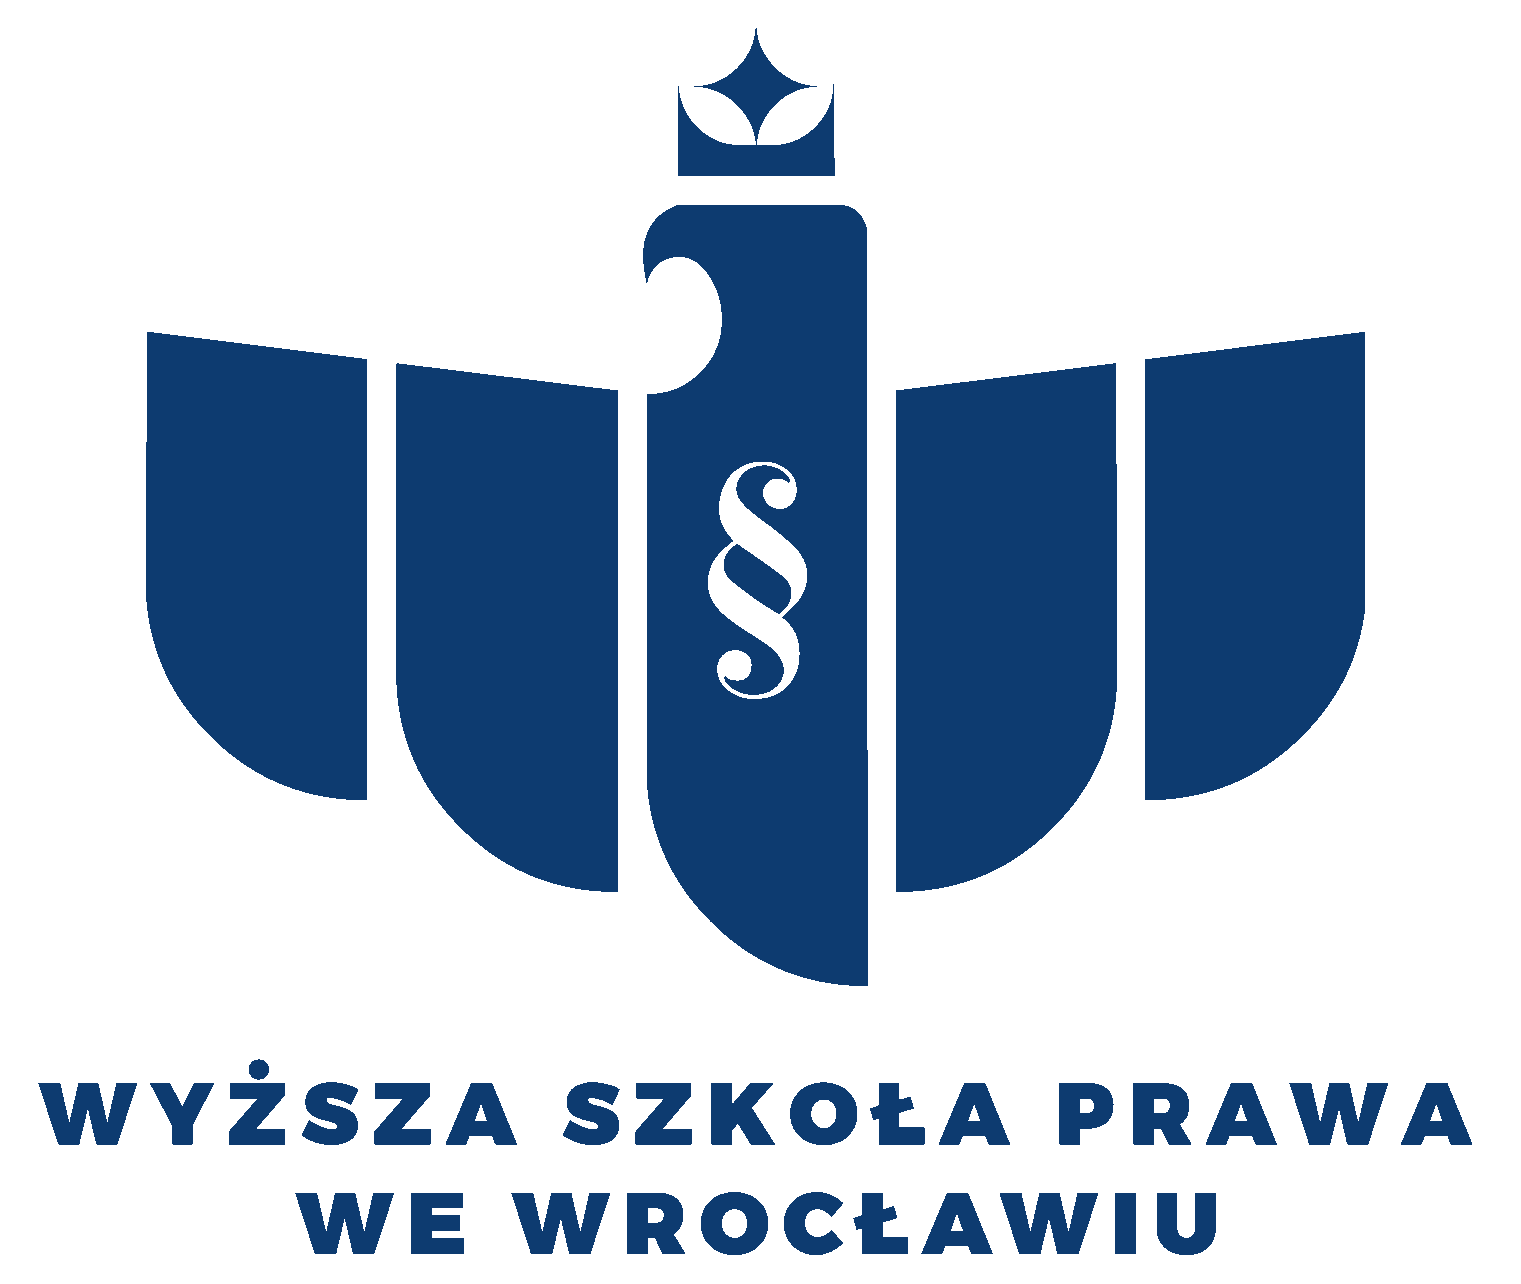 Logo Wyższa Szkoła Prawa (WSP) we Wrocławiu <small>(Uczelnia niepubliczna)</small>